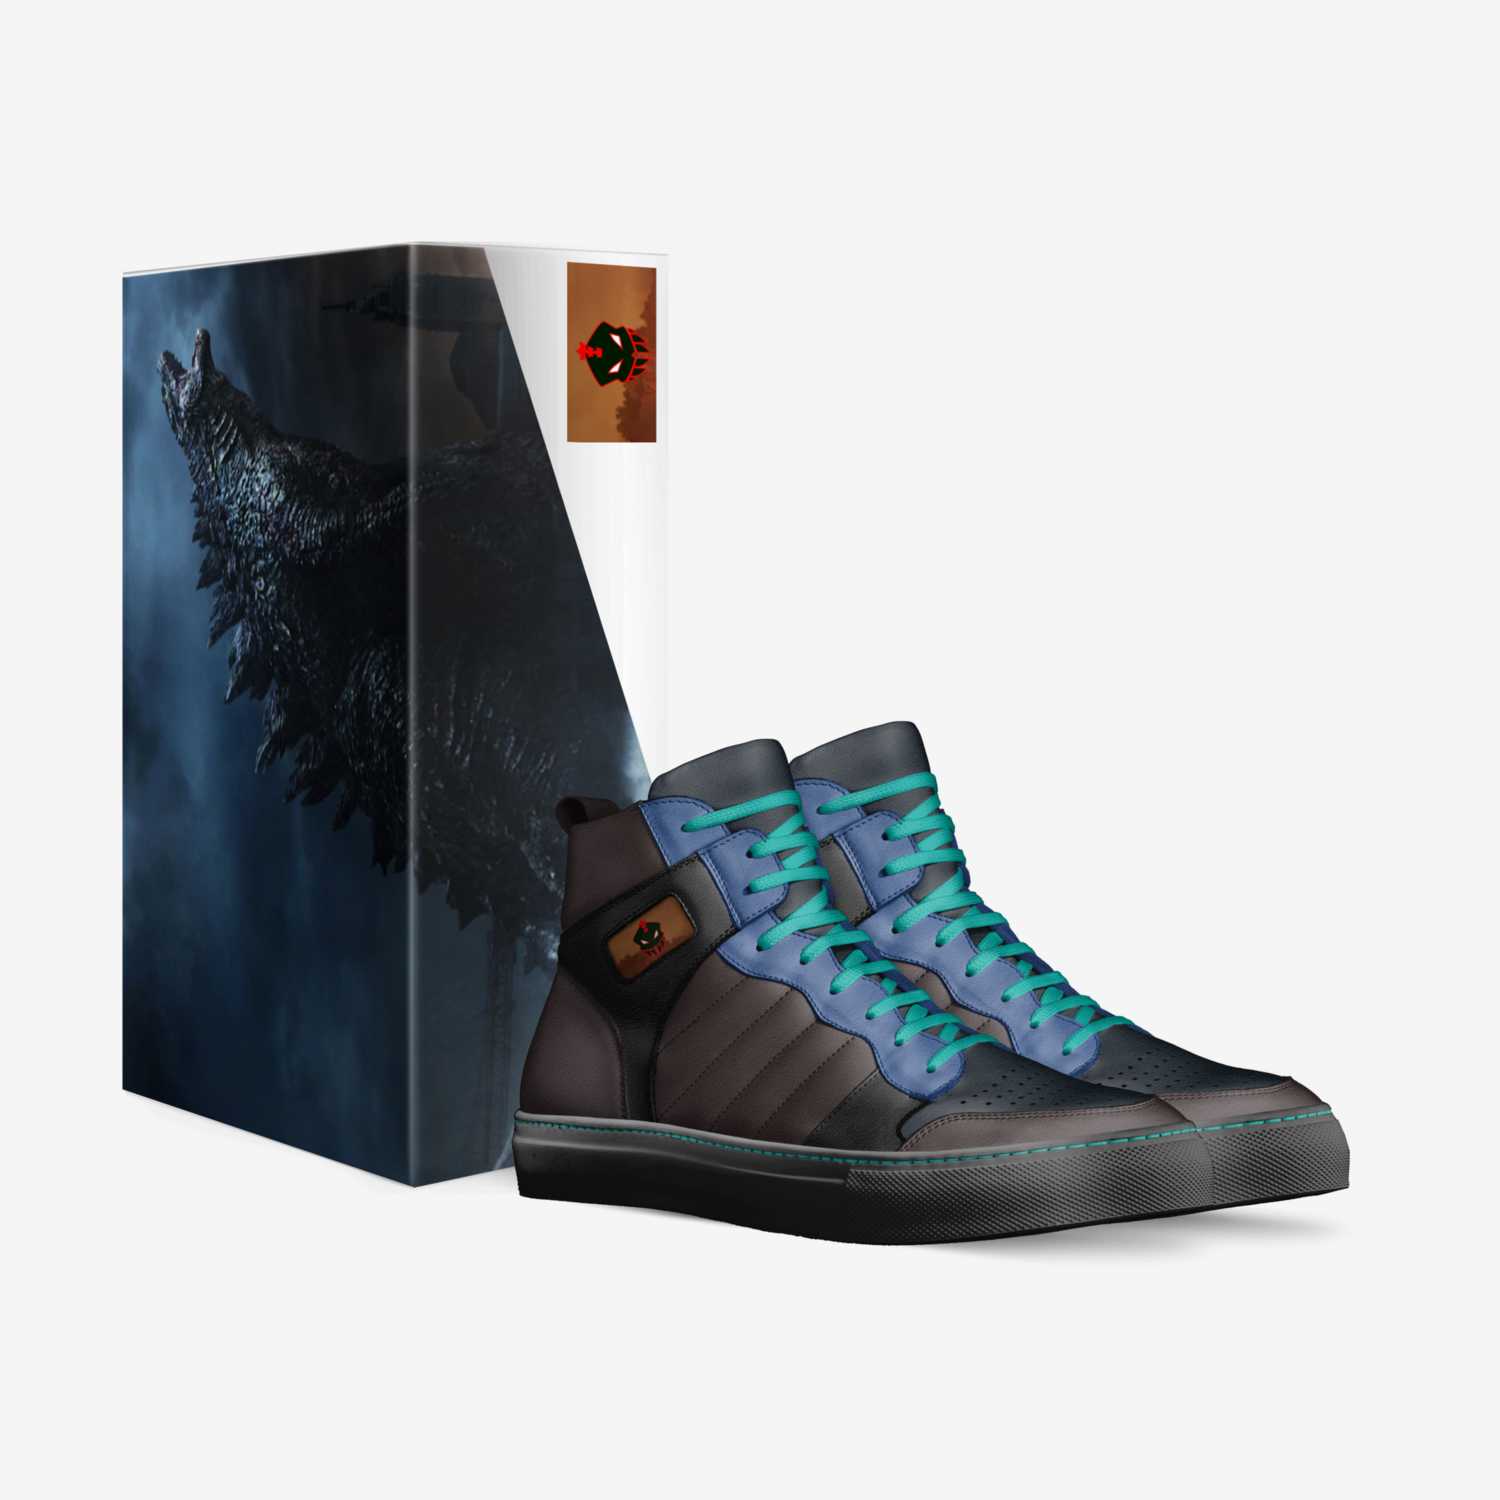 KaijuMassacre custom made in Italy shoes by Felix Kaiju | Box view